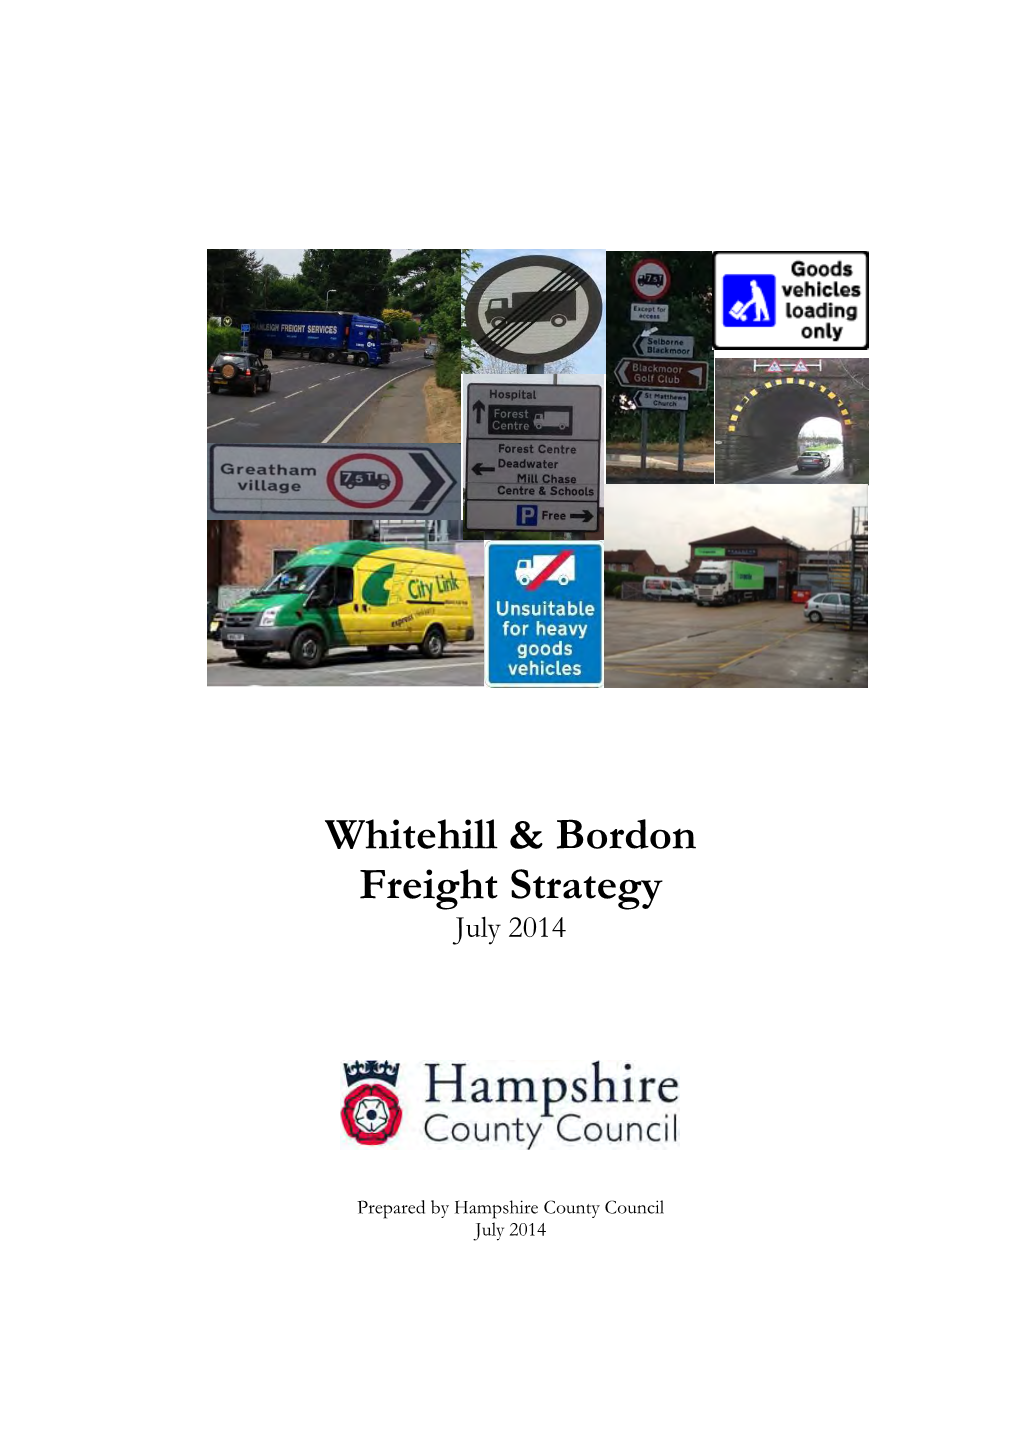 Whitehill & Bordon Freight Strategy